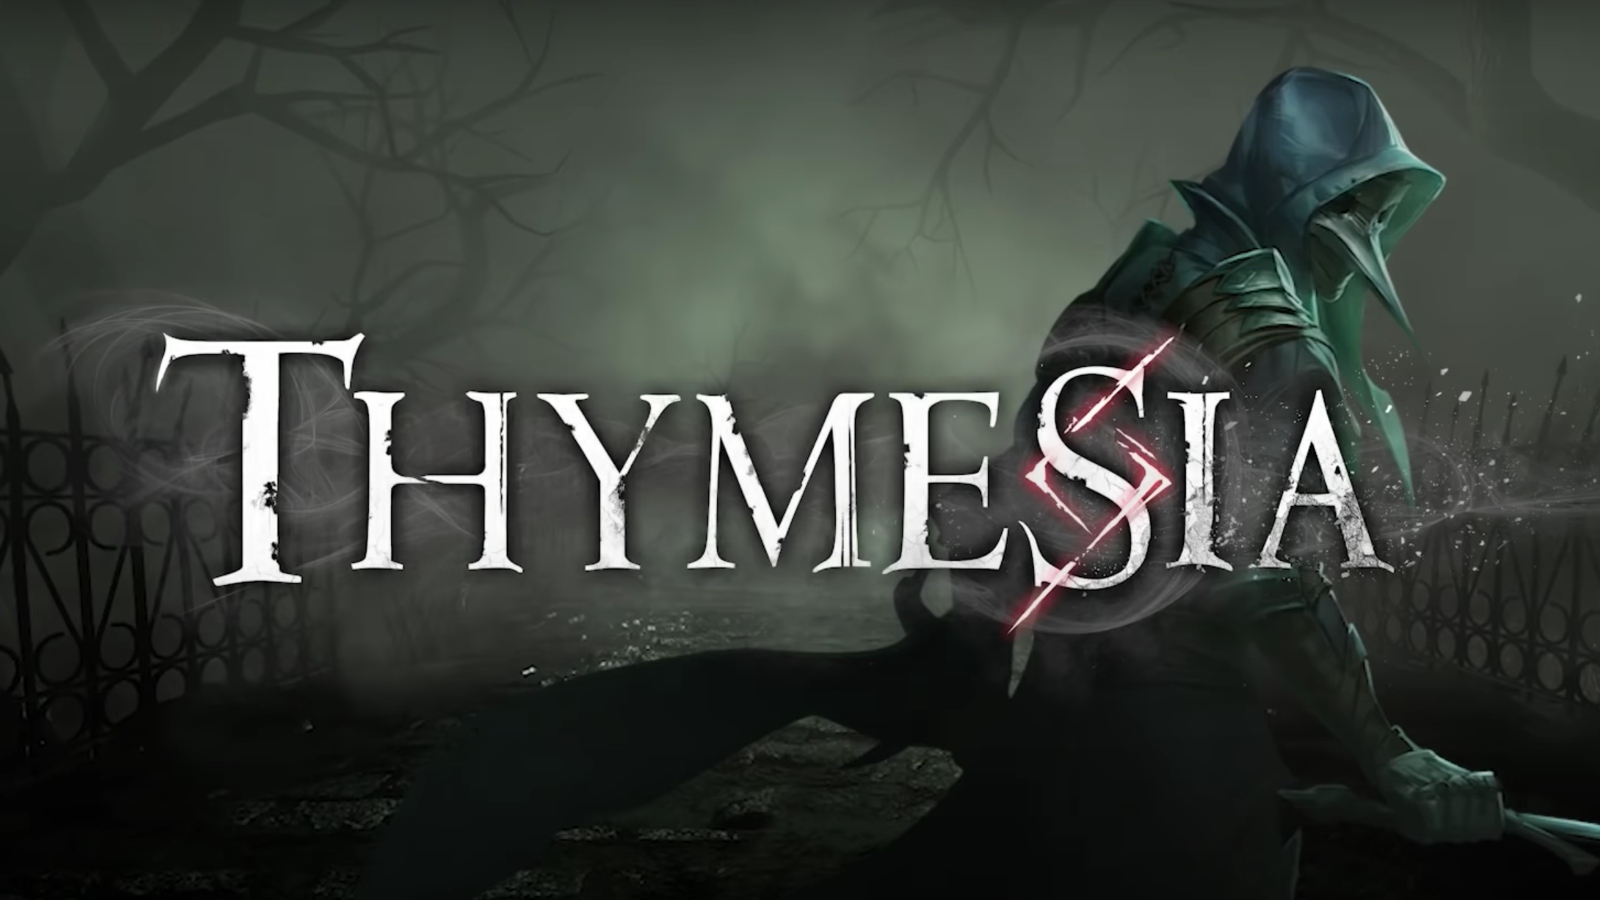 بازی Thymesia برای نینتندو سوییچ منتشر خواهد شد